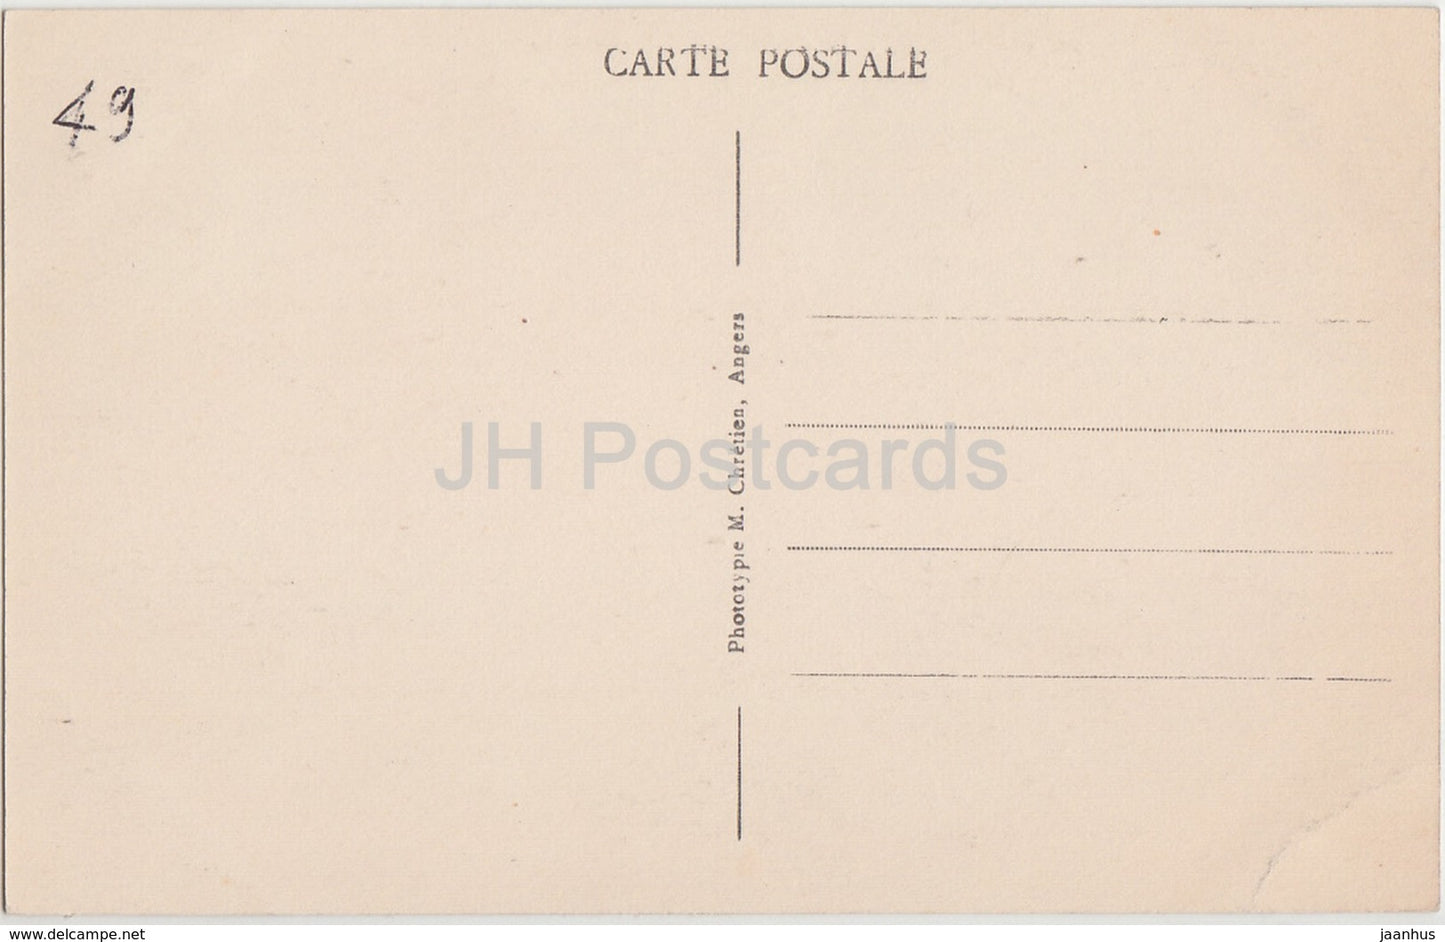 Angers - Le Chateau feodal modernise - par se douves fleuries - castle - 20 - old postcard - France - unused